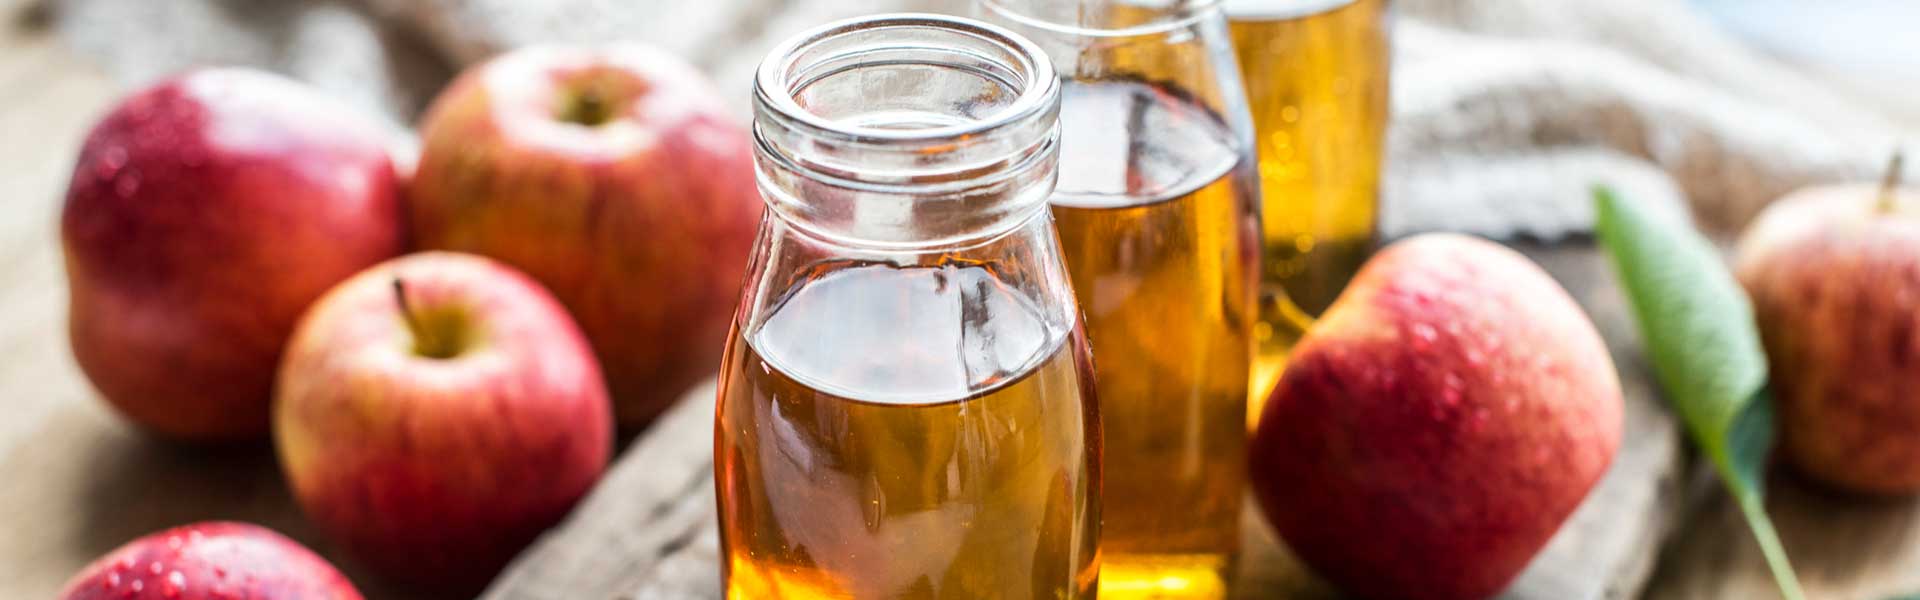 Como fazer vinagre de maçã